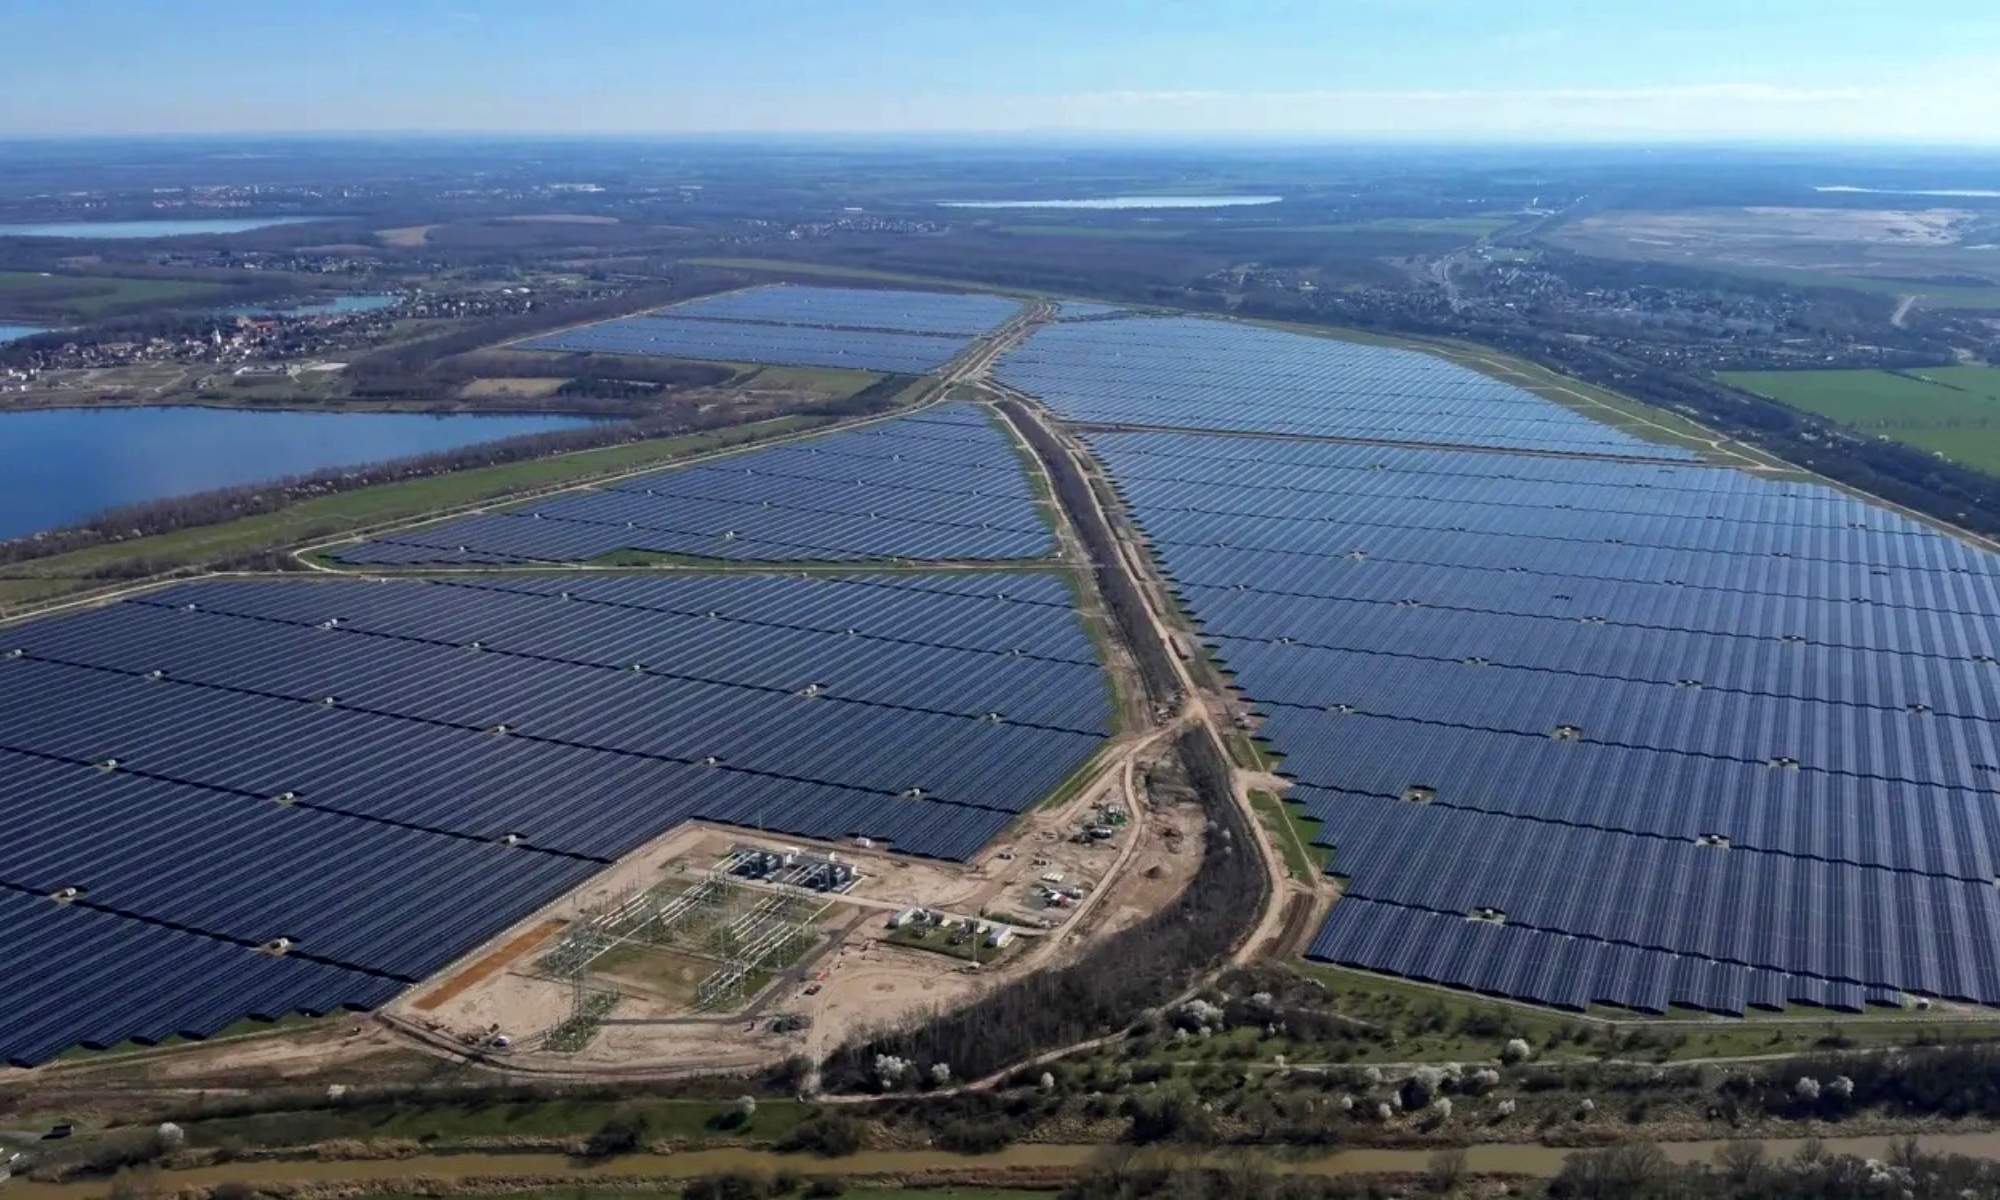 La planta solar de Witznitz tiene más de 1 millón de paneles fotovoltaicos.